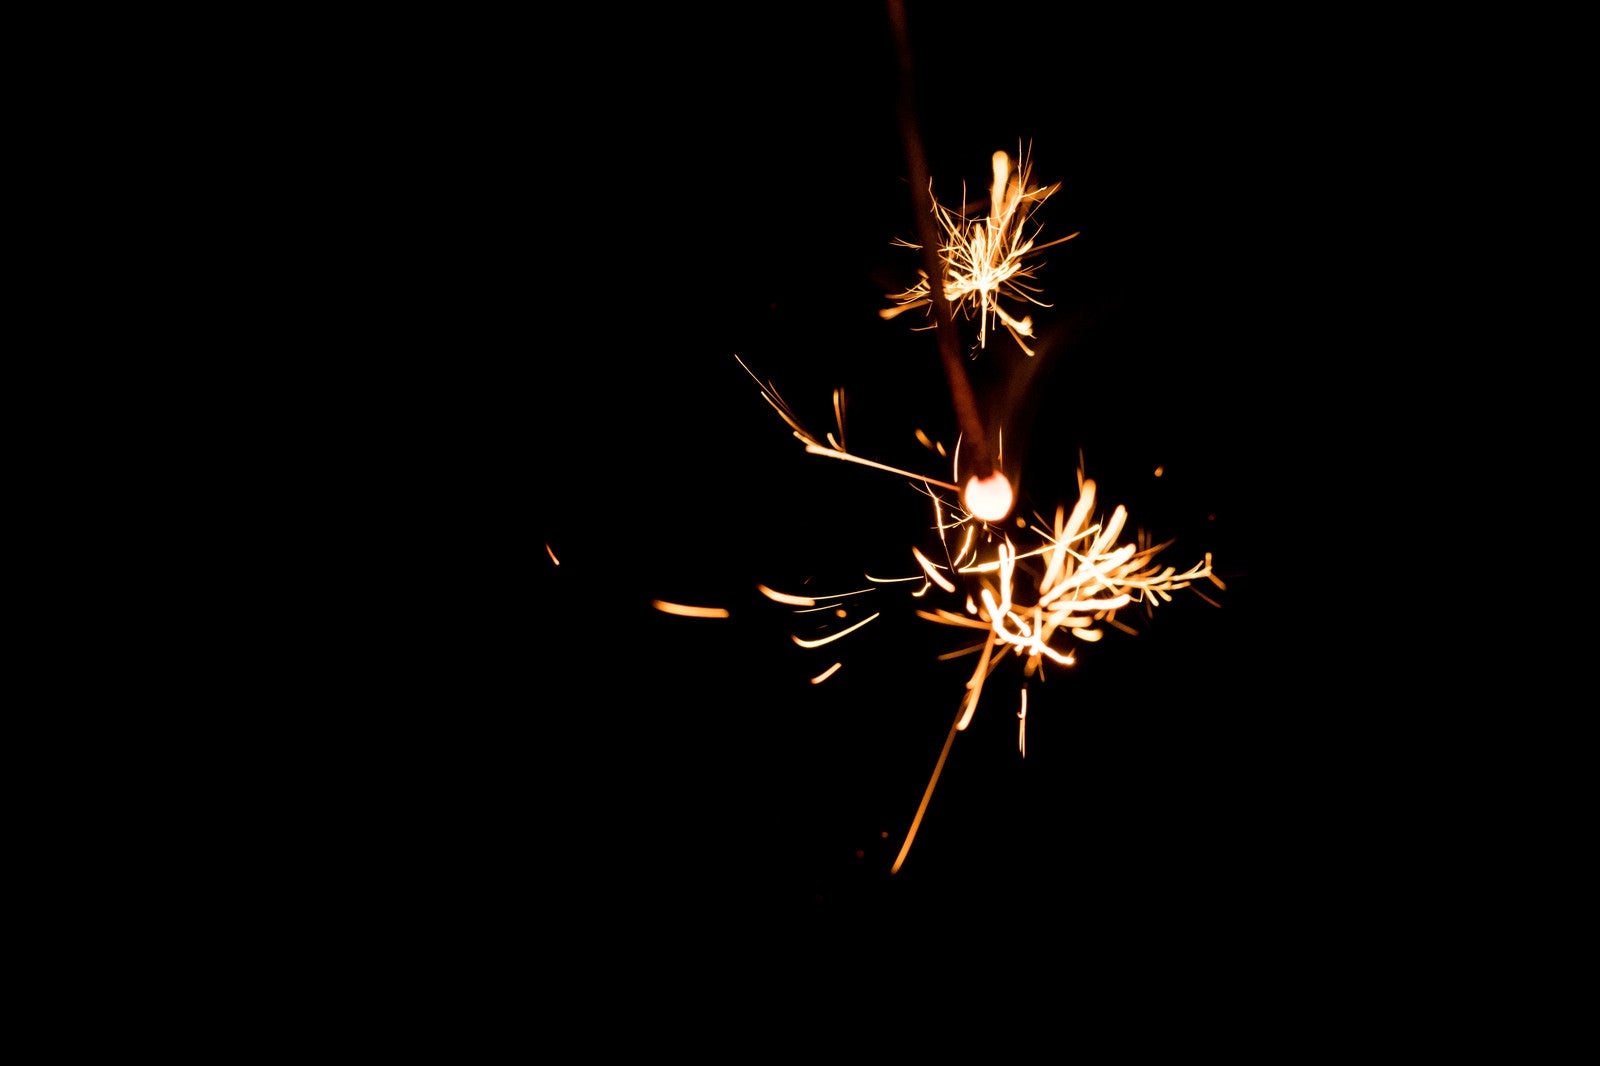 「線香花火の弾ける火花の様子」の写真